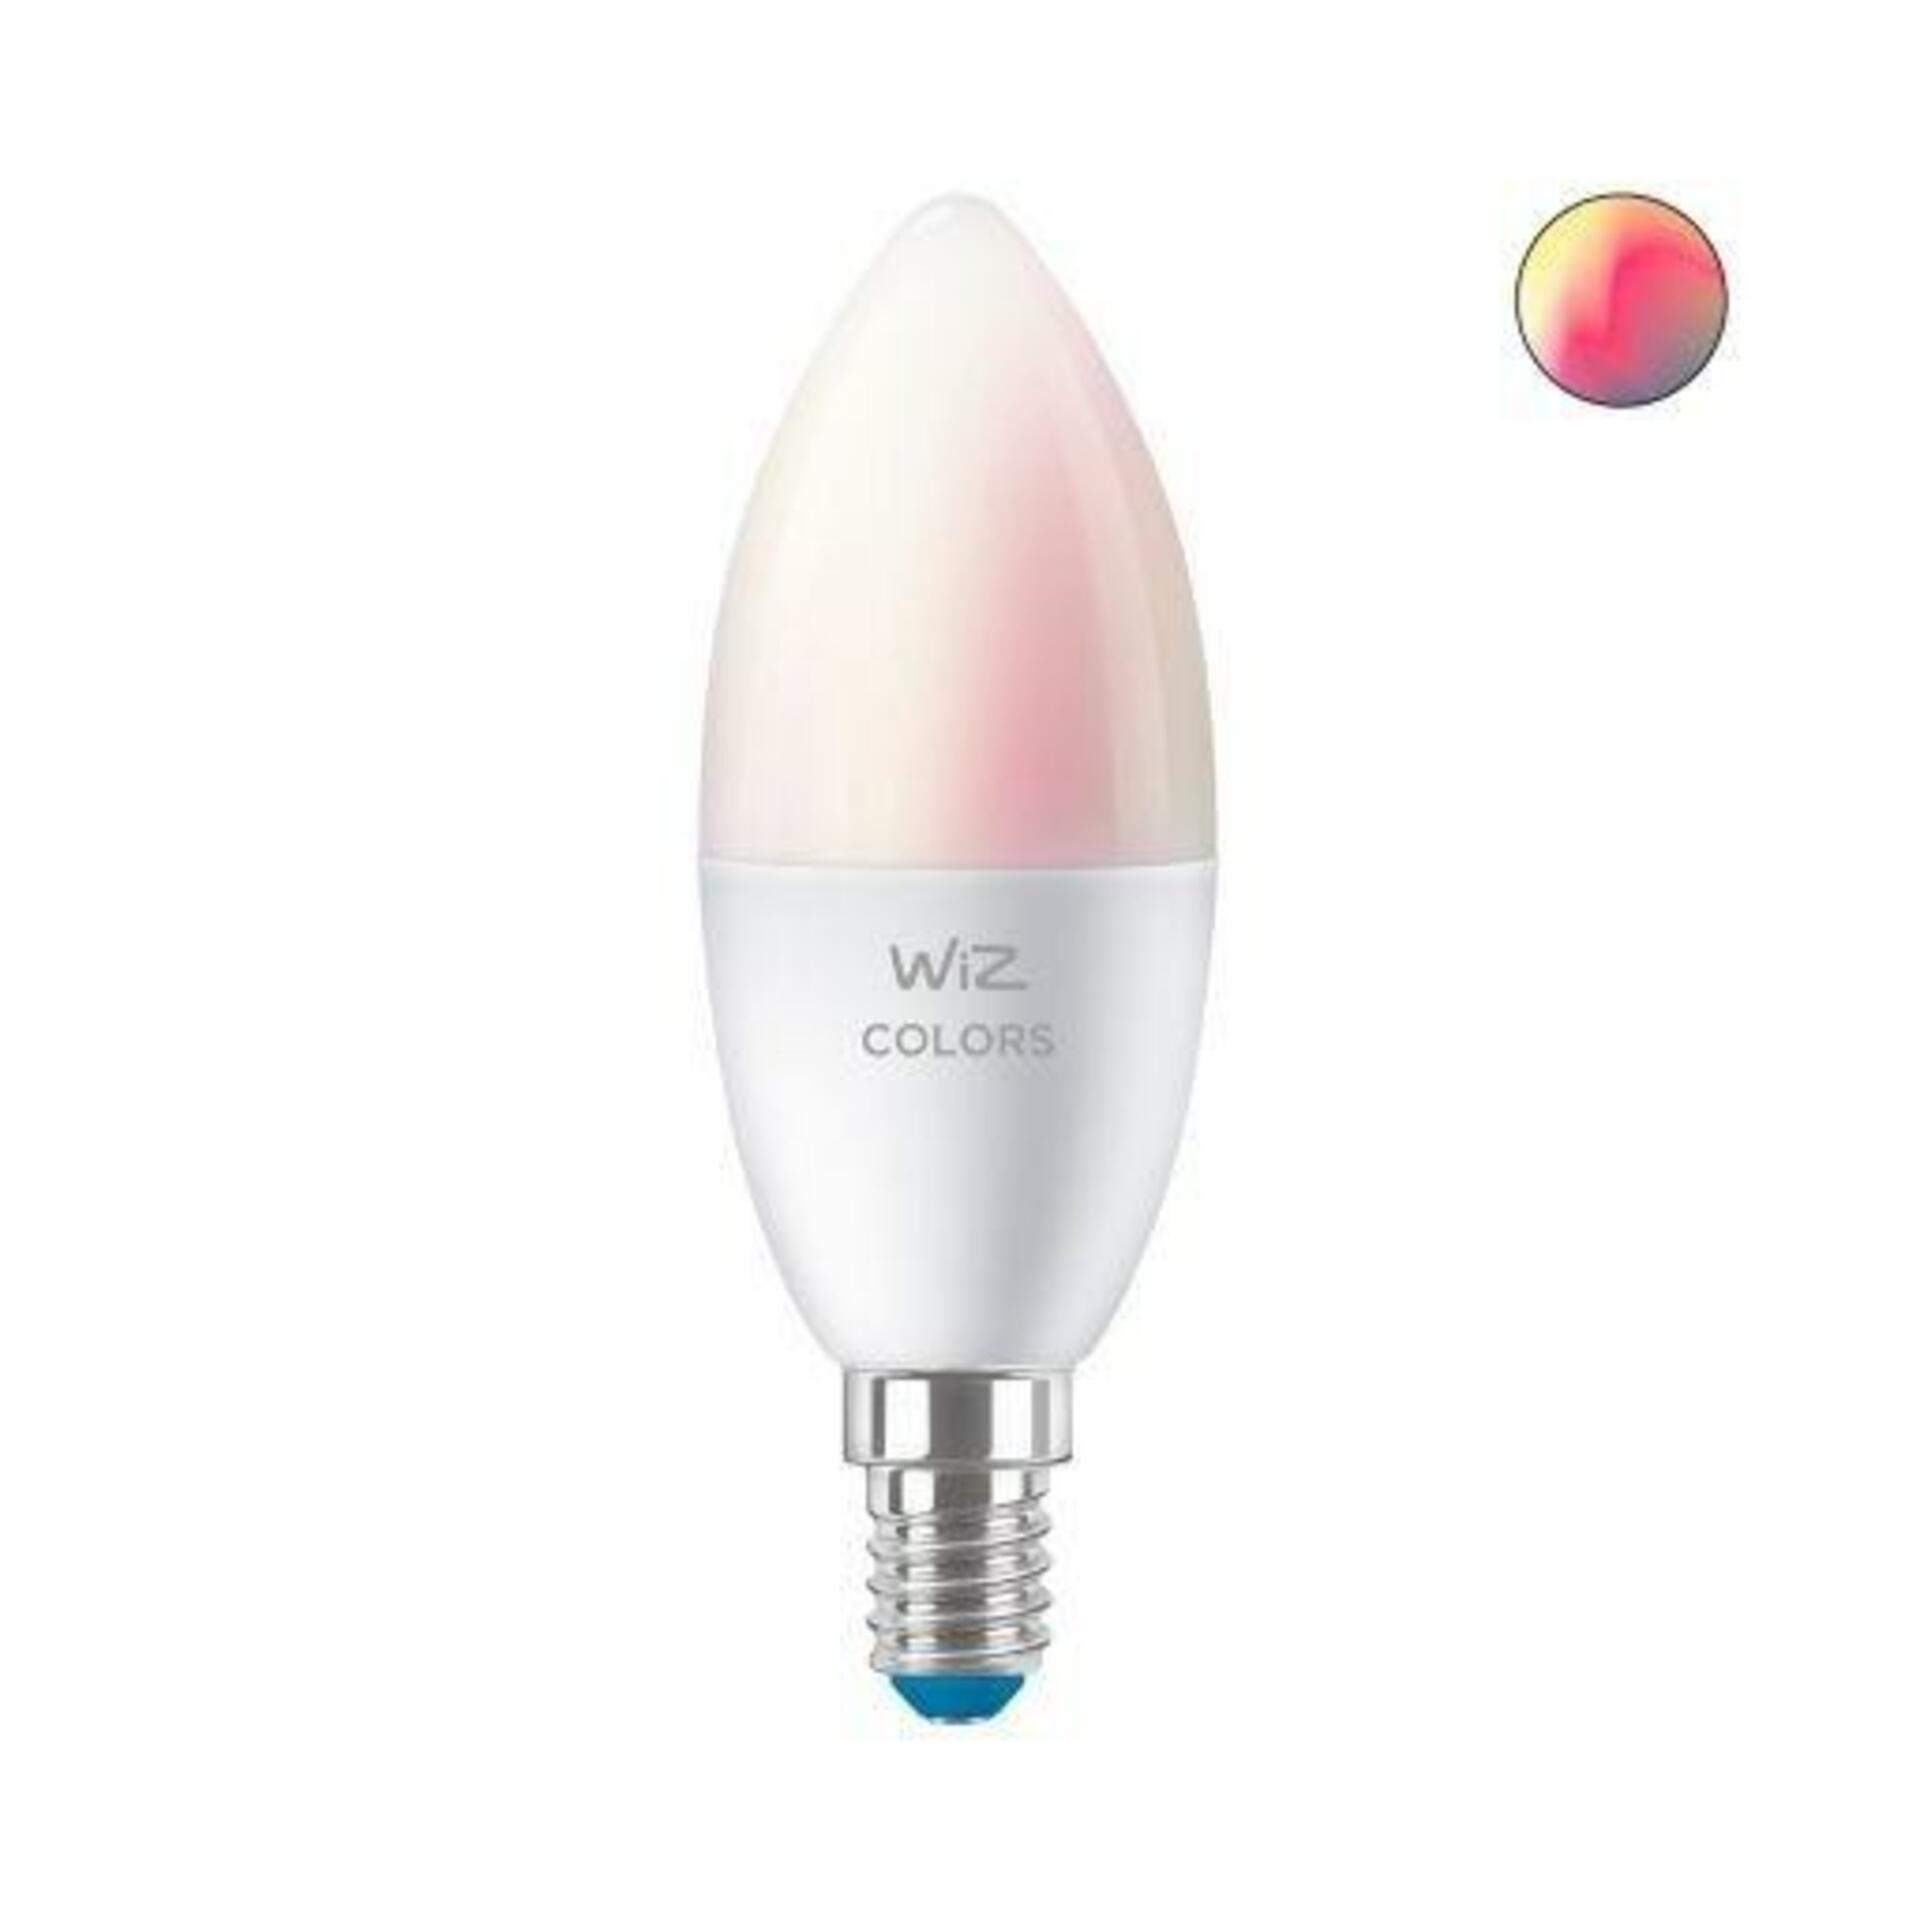 Levně LED Žárovka WiZ Colors 8718699787097 E14 C37 4,9-40W 470lm 2200-6500K, RGB 16 mil.barev, stmívatelná